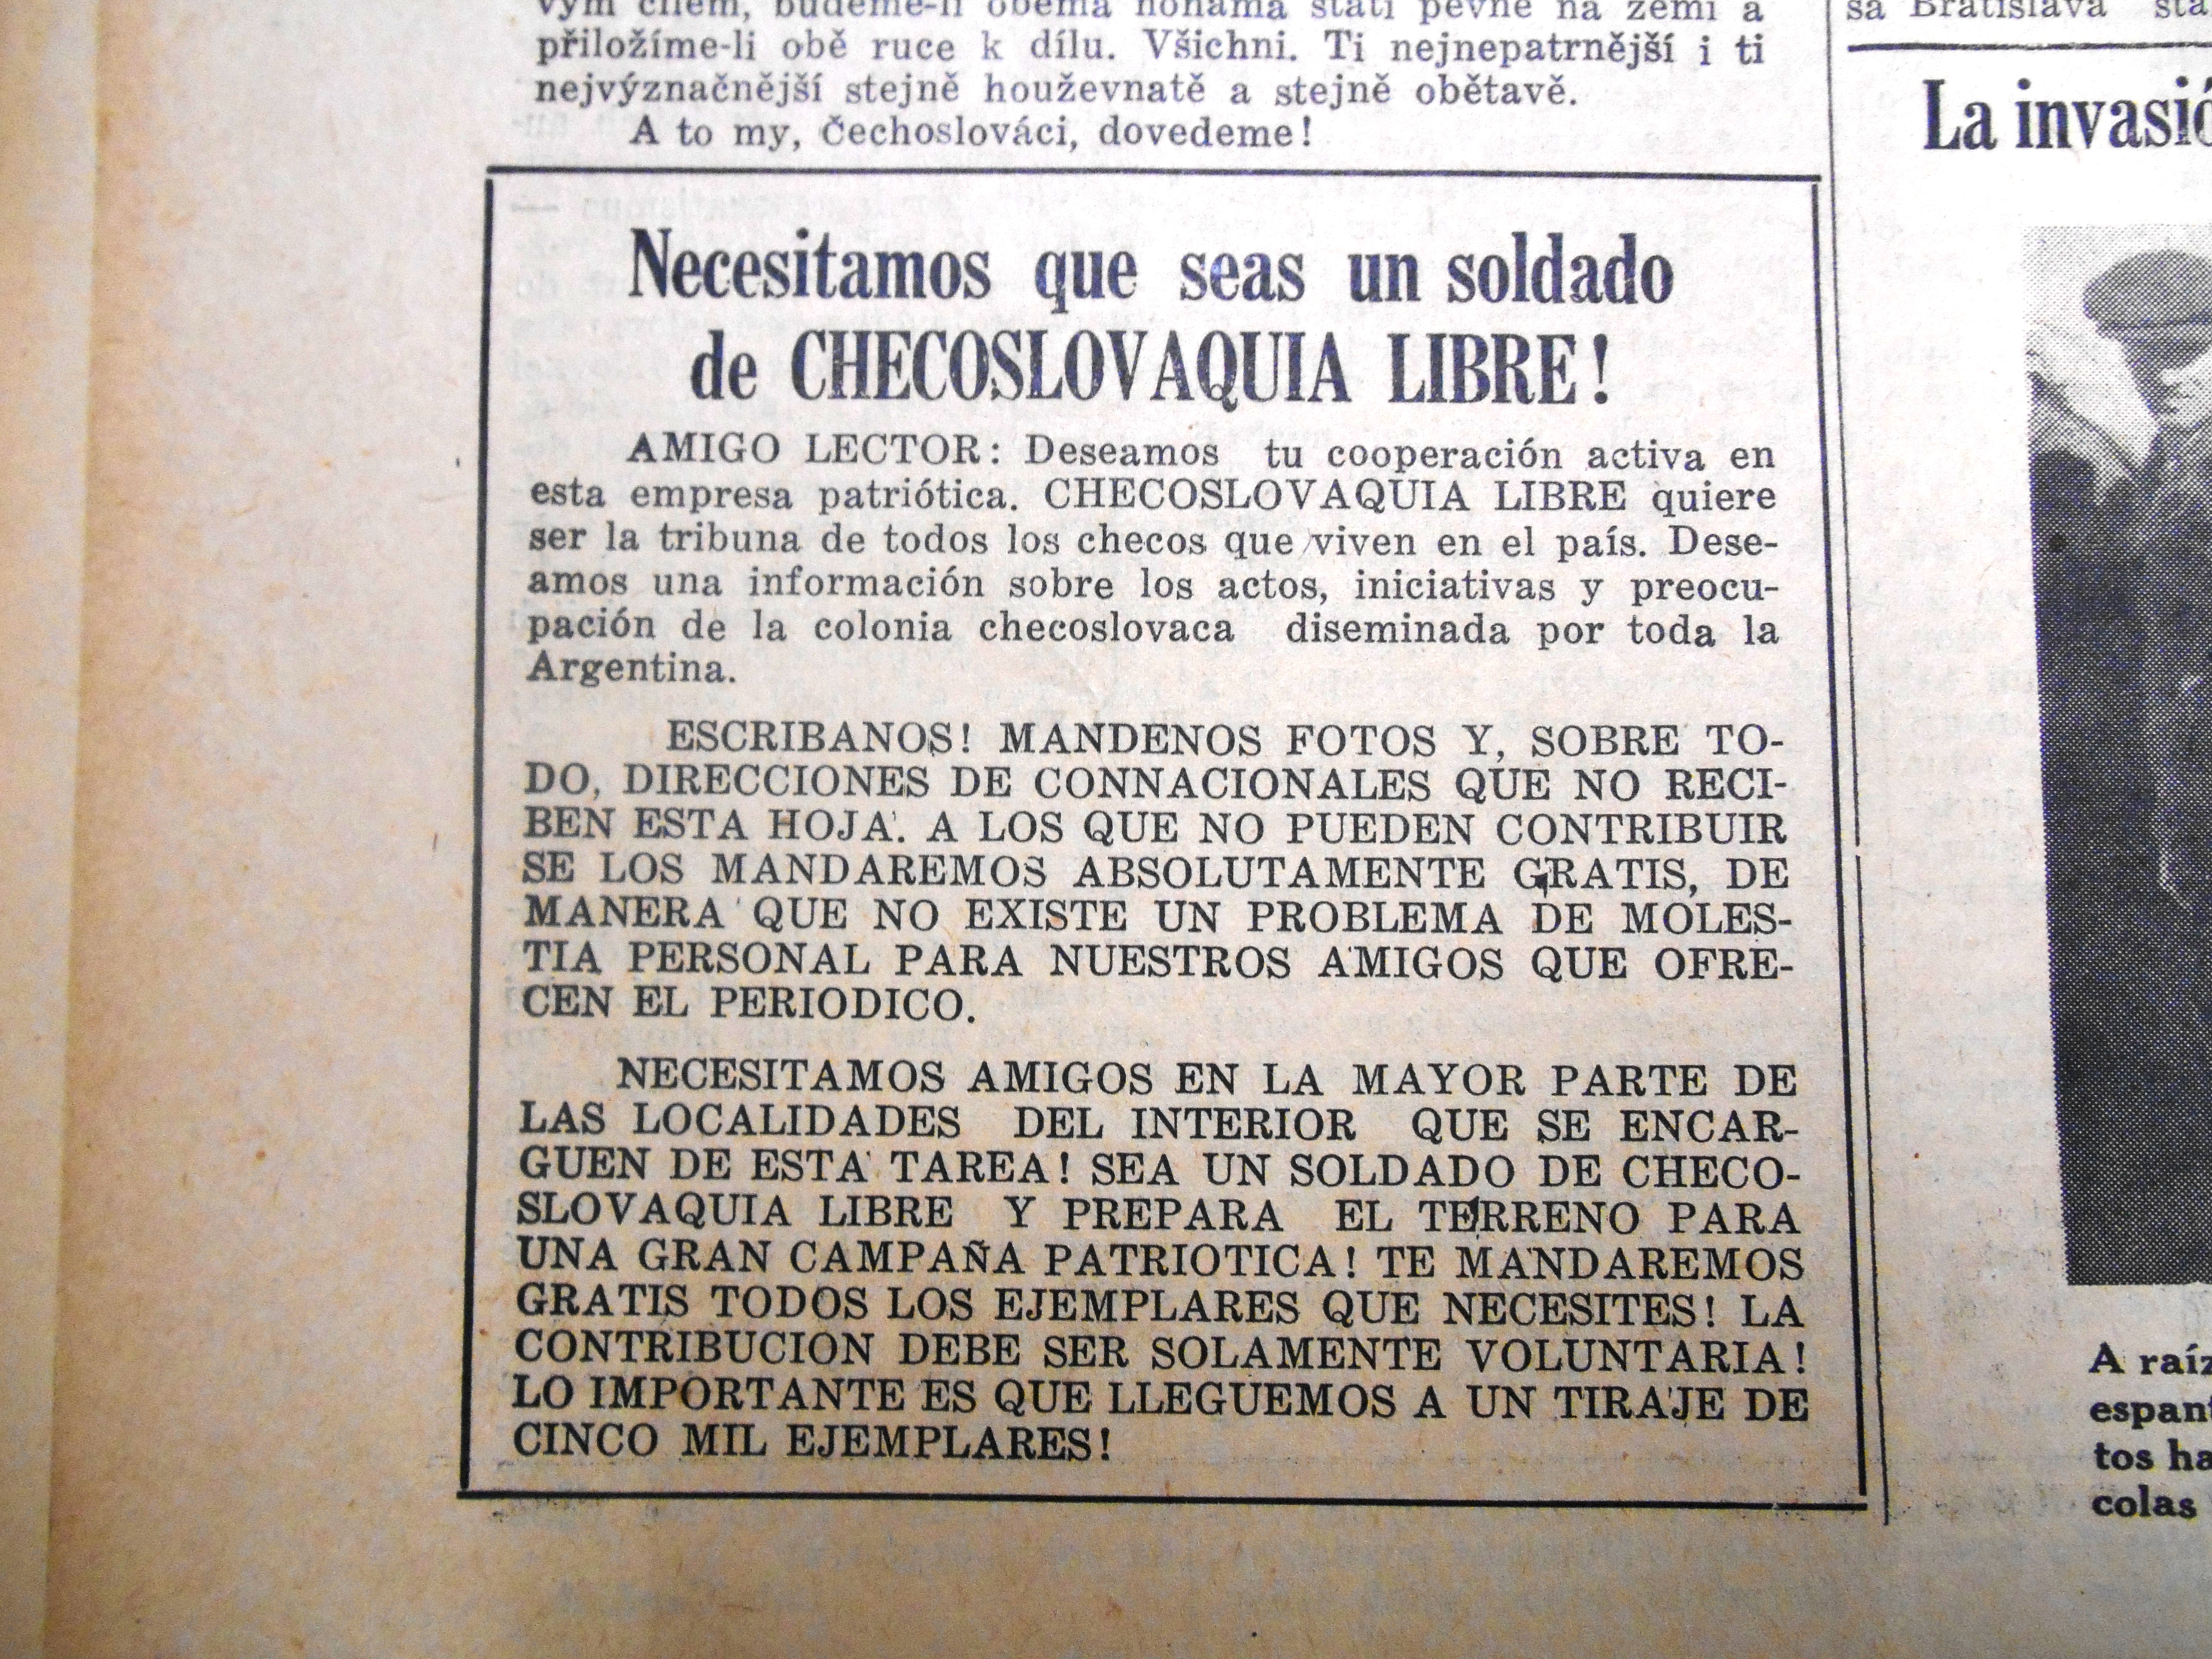 Checoslovaquia_libre_1939_053